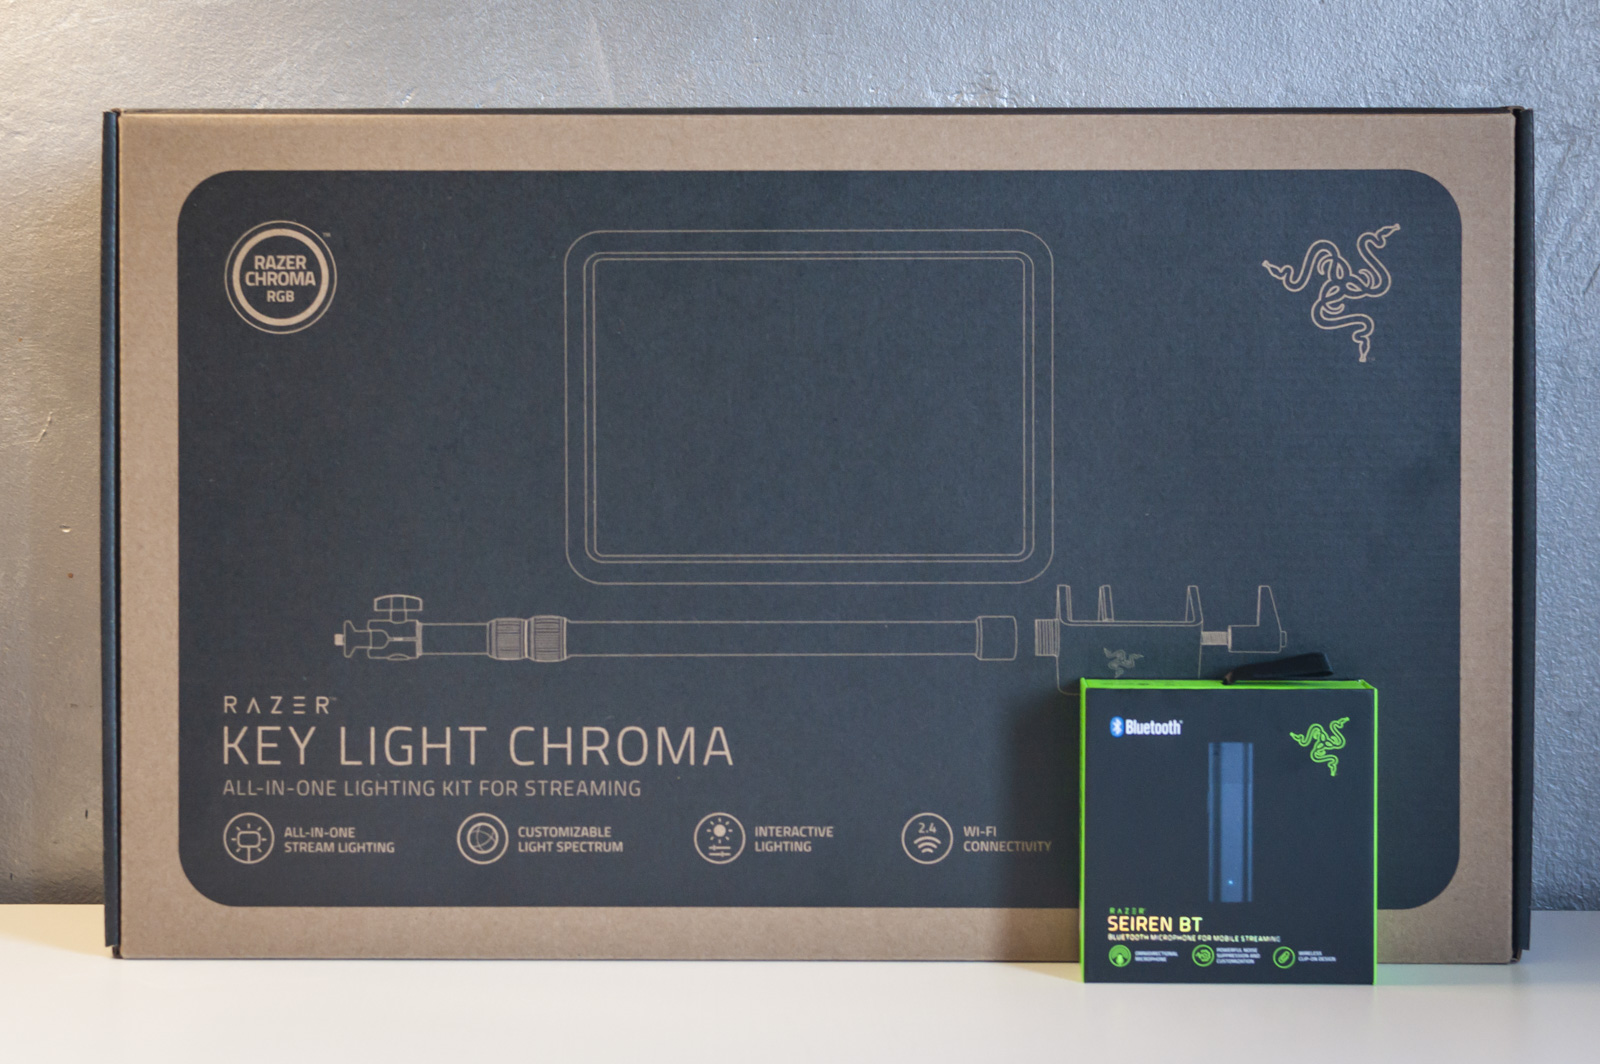 Recensione Razer Key Light Chroma e Razer Seiren BT, lo streaming è una realtà davvero per tutti